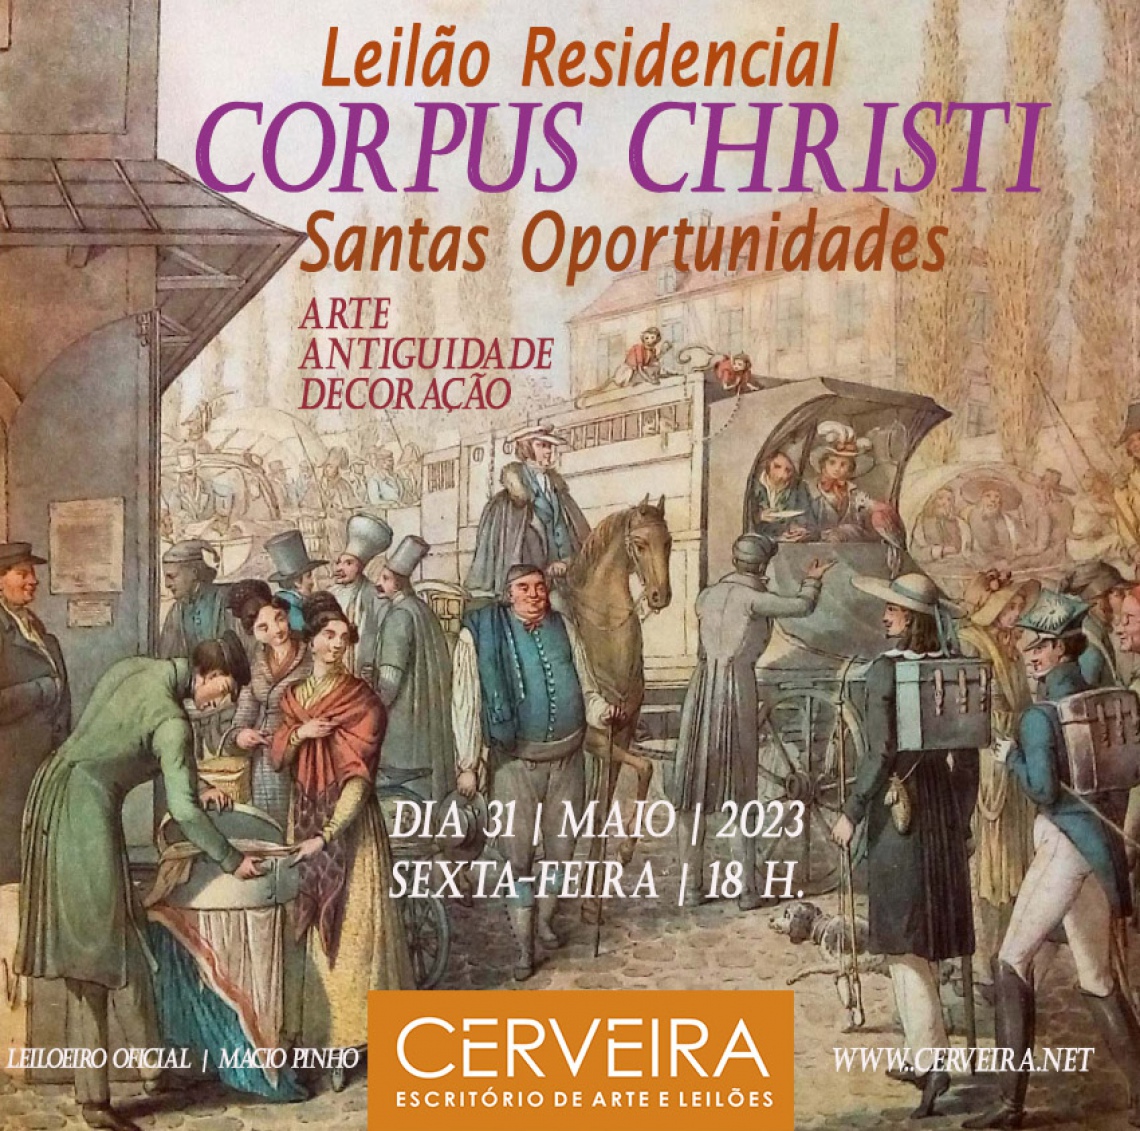 LEILÃO RESIDENCIAL  CORPUS CHRISTI | SANTAS OPORTUNIDADES EM ARTE, ANTIGUIDADES E DECORAÇÃO